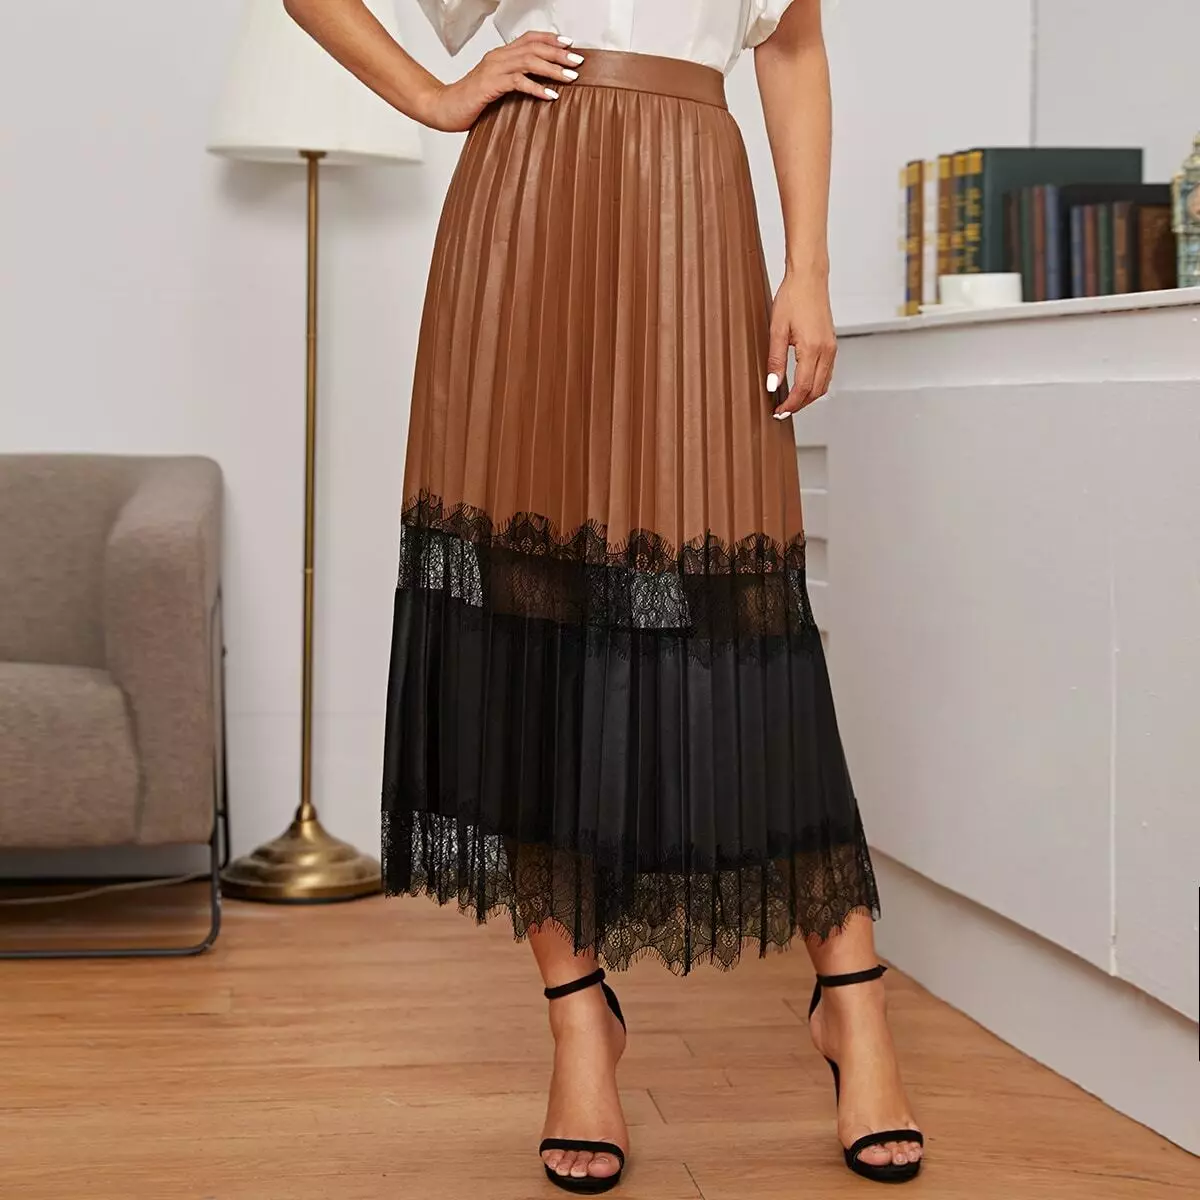 Placs Skirt Kulit: Apa yang perlu dipakai Rok Eco-Piece Pleated? Imej dengan skirt kulit tiruan hitam dan coklat 800_18